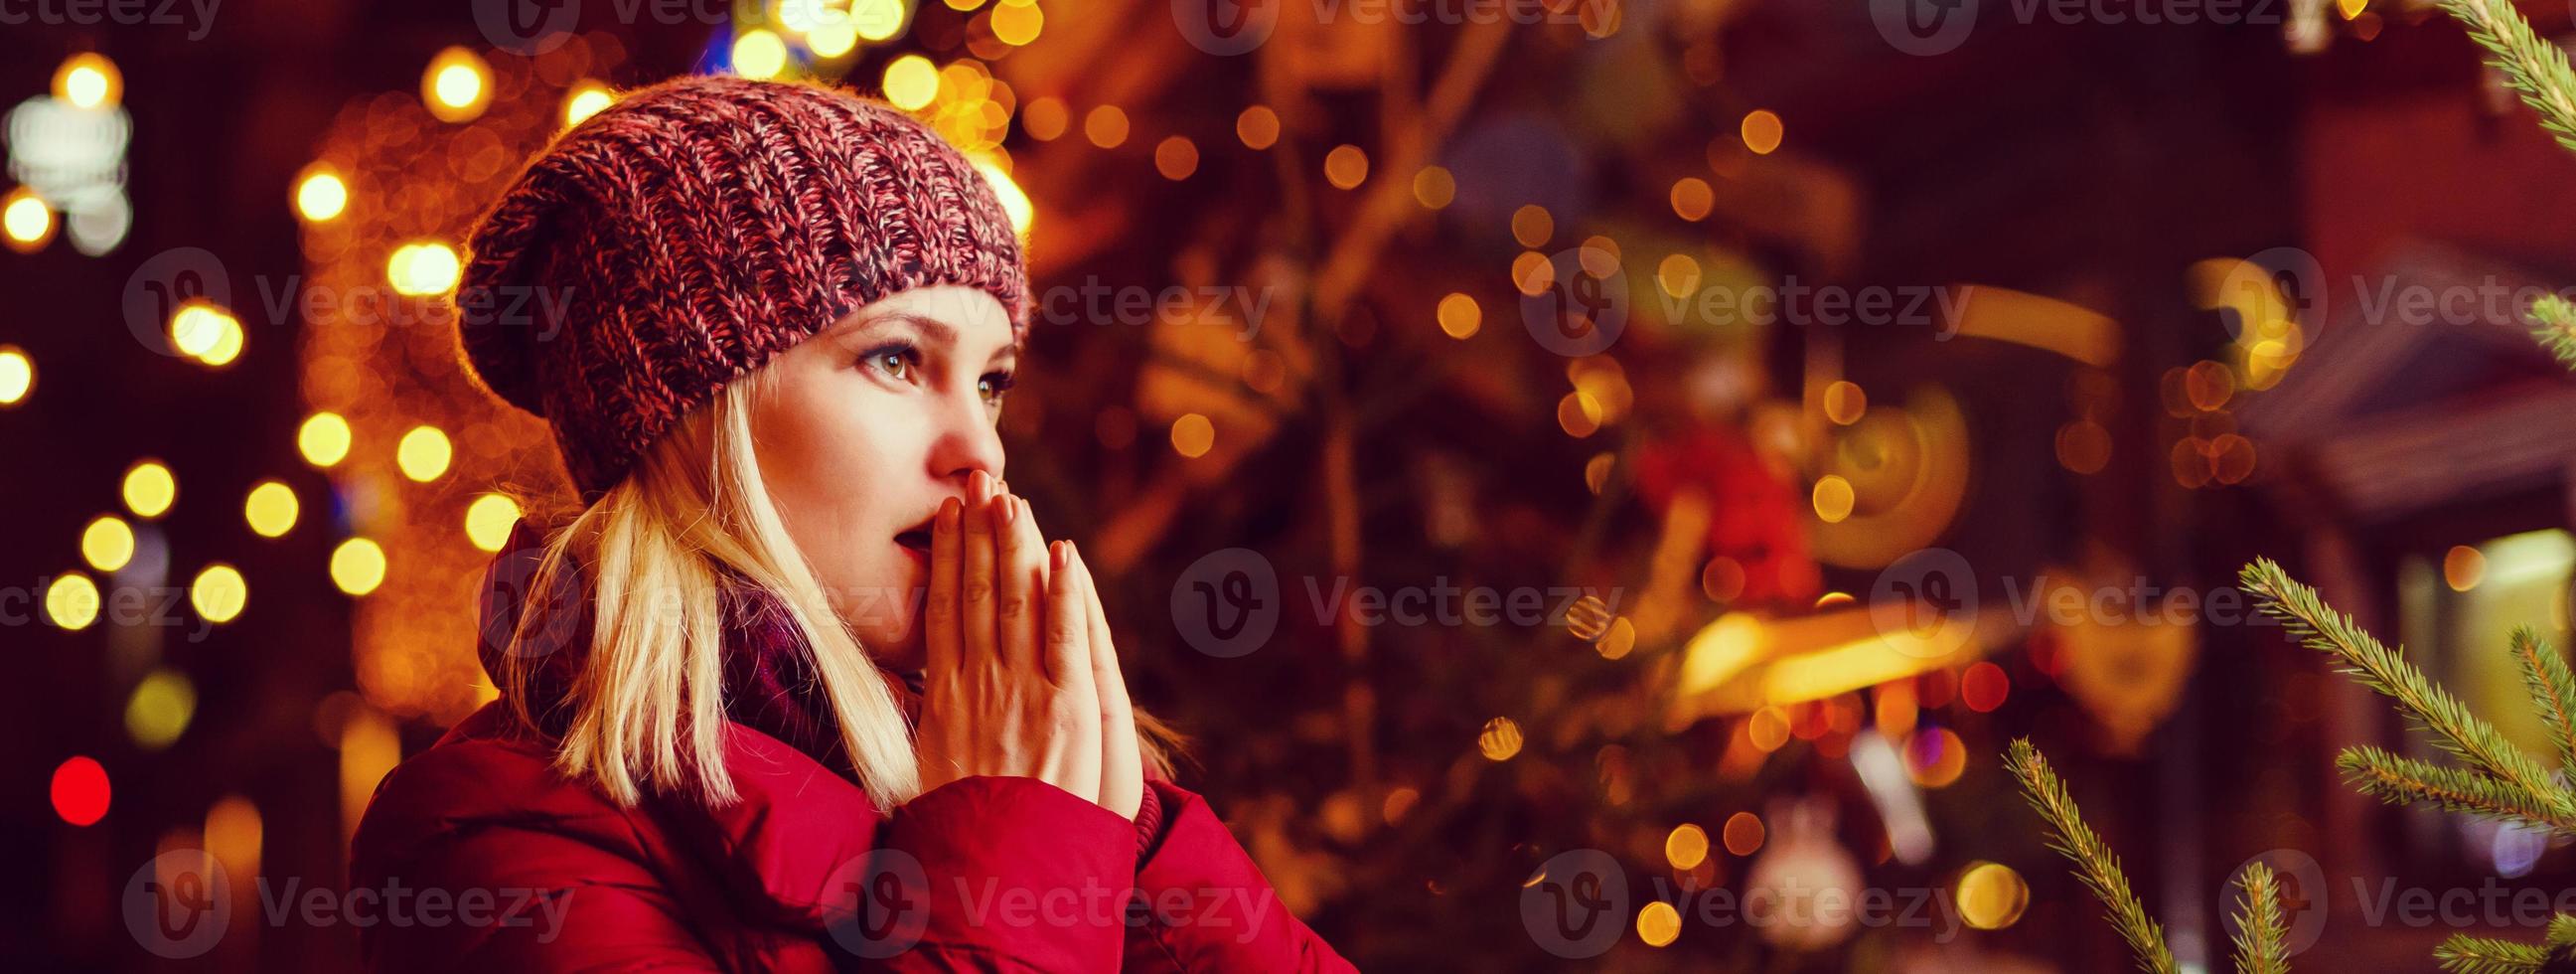 foto al aire libre de una joven hermosa y sonriente feliz posando en la calle. feria festiva de navidad en el fondo. modelo con elegante abrigo de invierno, gorro de punto, bufanda.